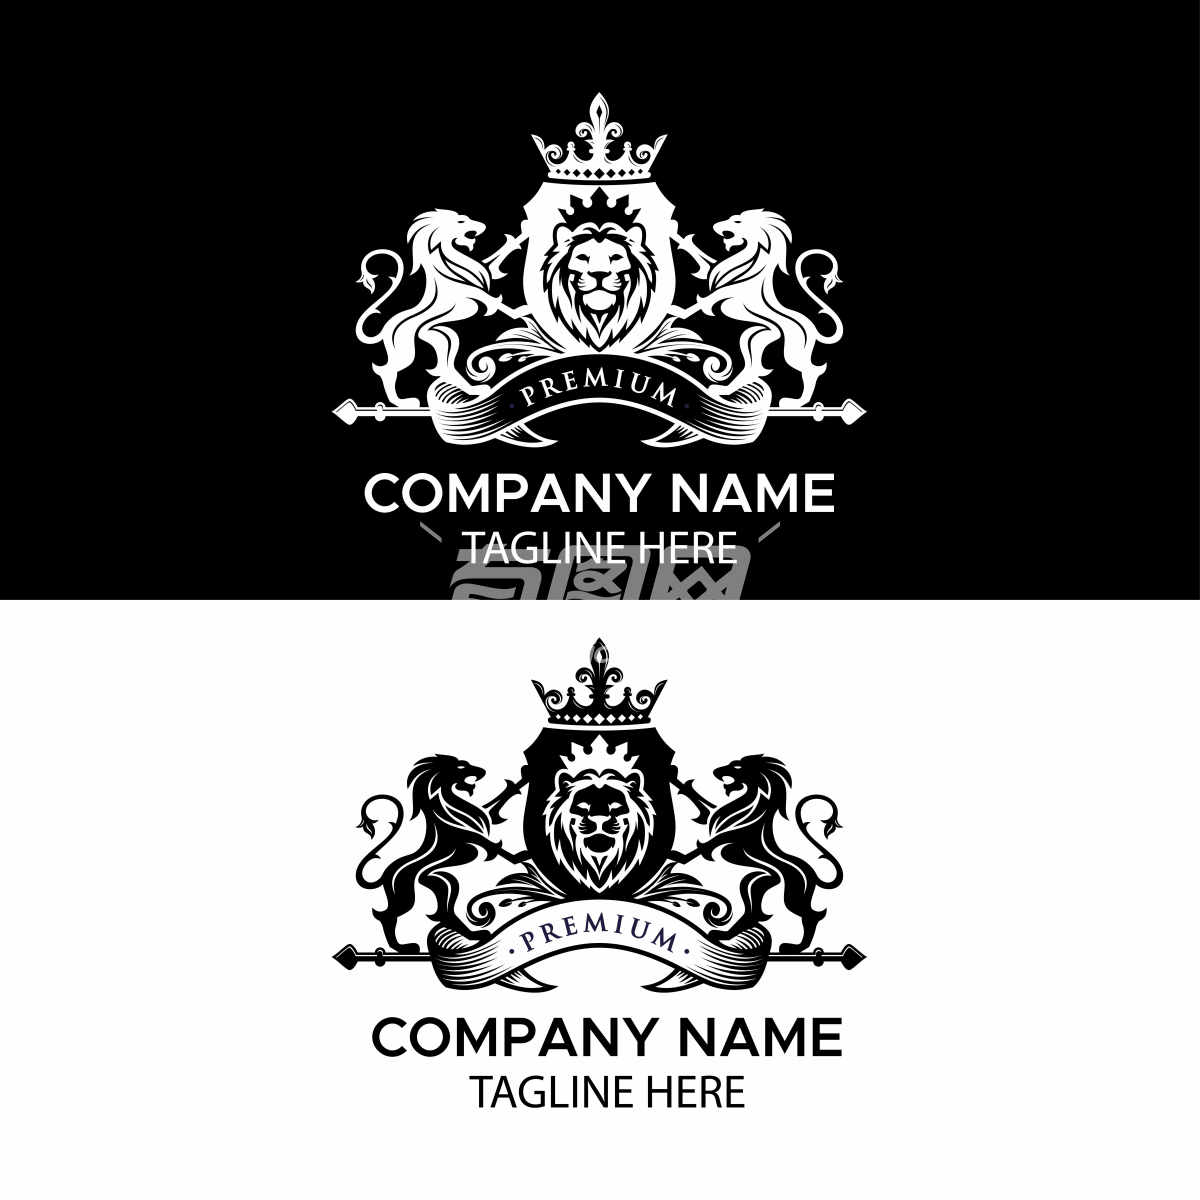 公司标志设计